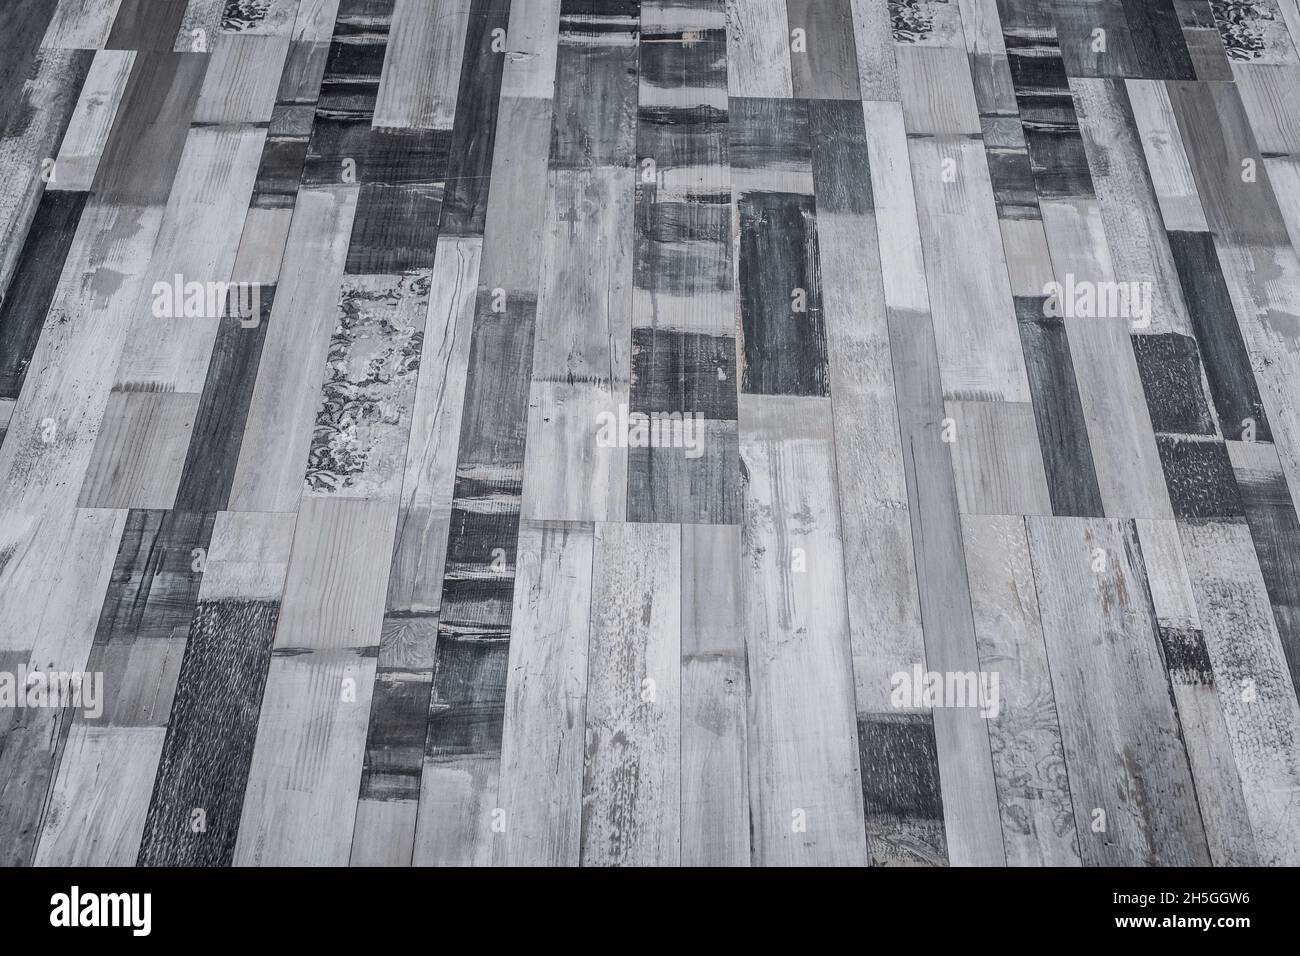 Dark grey floor wooden surface parquet or laminate texture background. Stock Photo